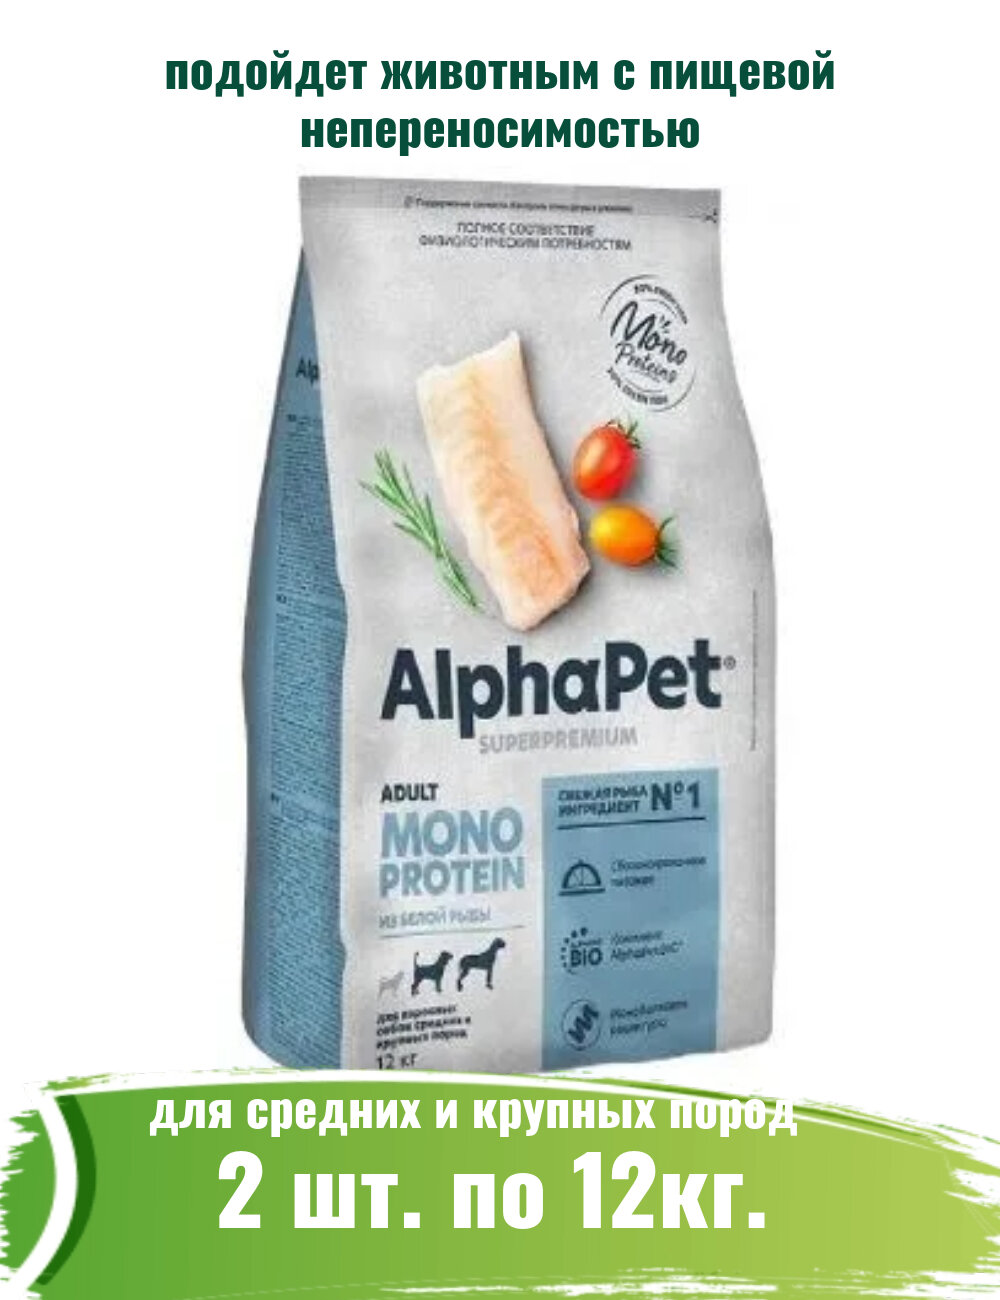 AlphaPet Superpremium Monoprotein (АльфаПет) 2шт по 12кг из белой рыбы сухой для взрослых собак средних и крупных пород